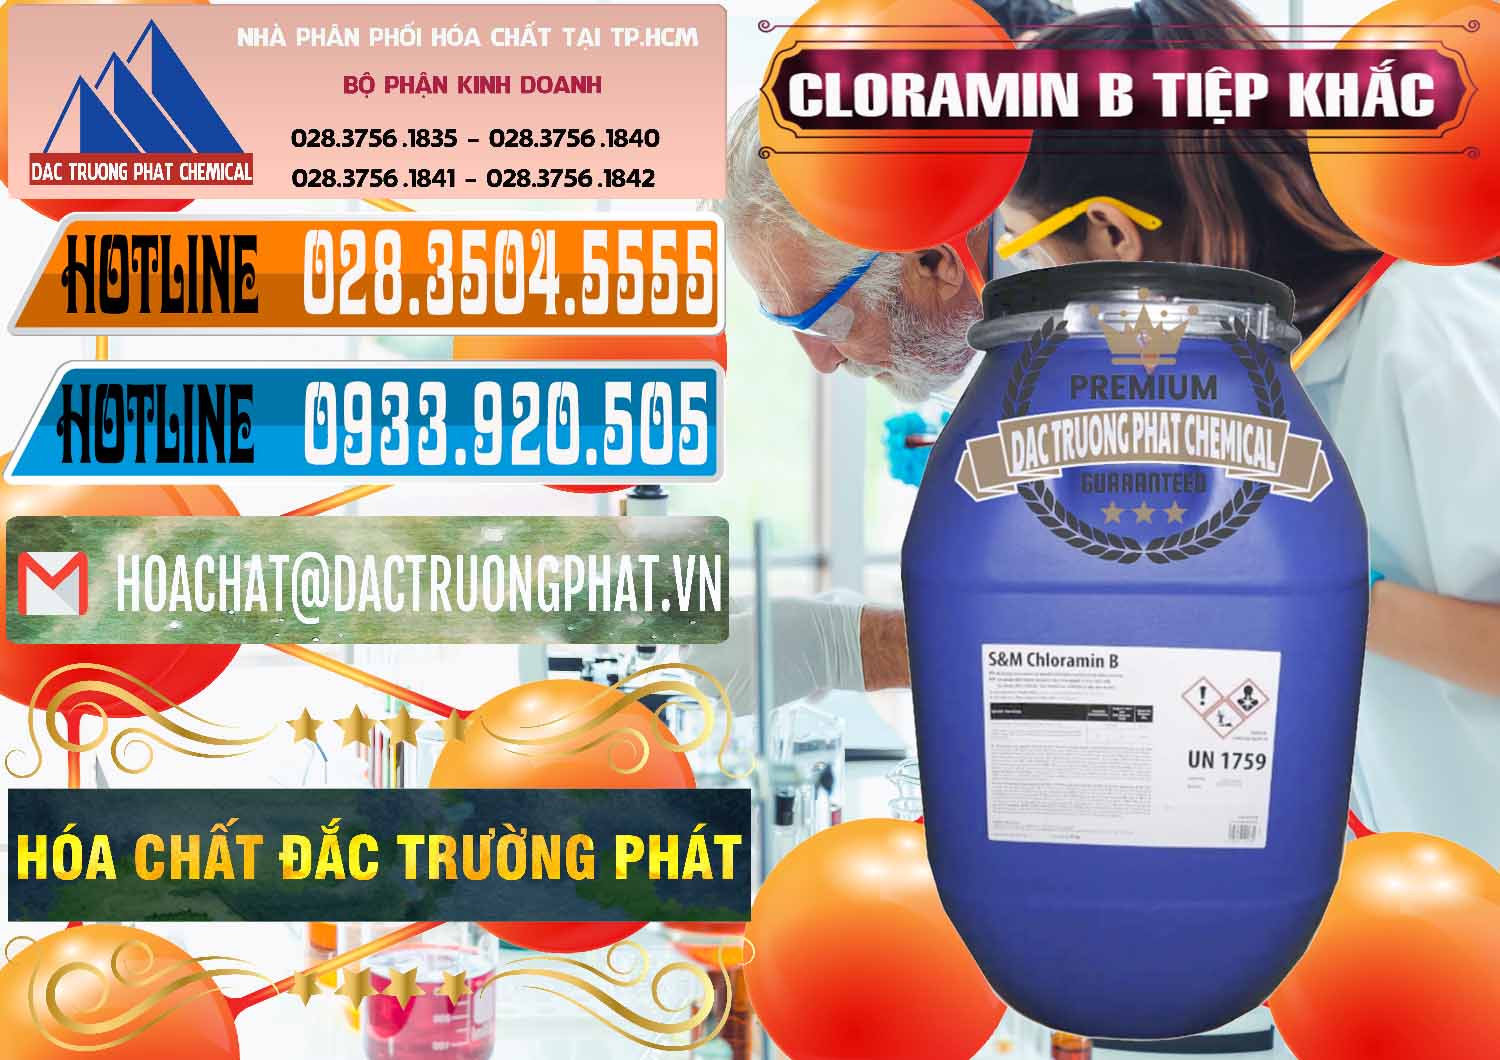 Cty chuyên phân phối ( bán ) Cloramin B Cộng Hòa Séc Tiệp Khắc Czech Republic - 0299 - Công ty cung cấp ( nhập khẩu ) hóa chất tại TP.HCM - stmp.net